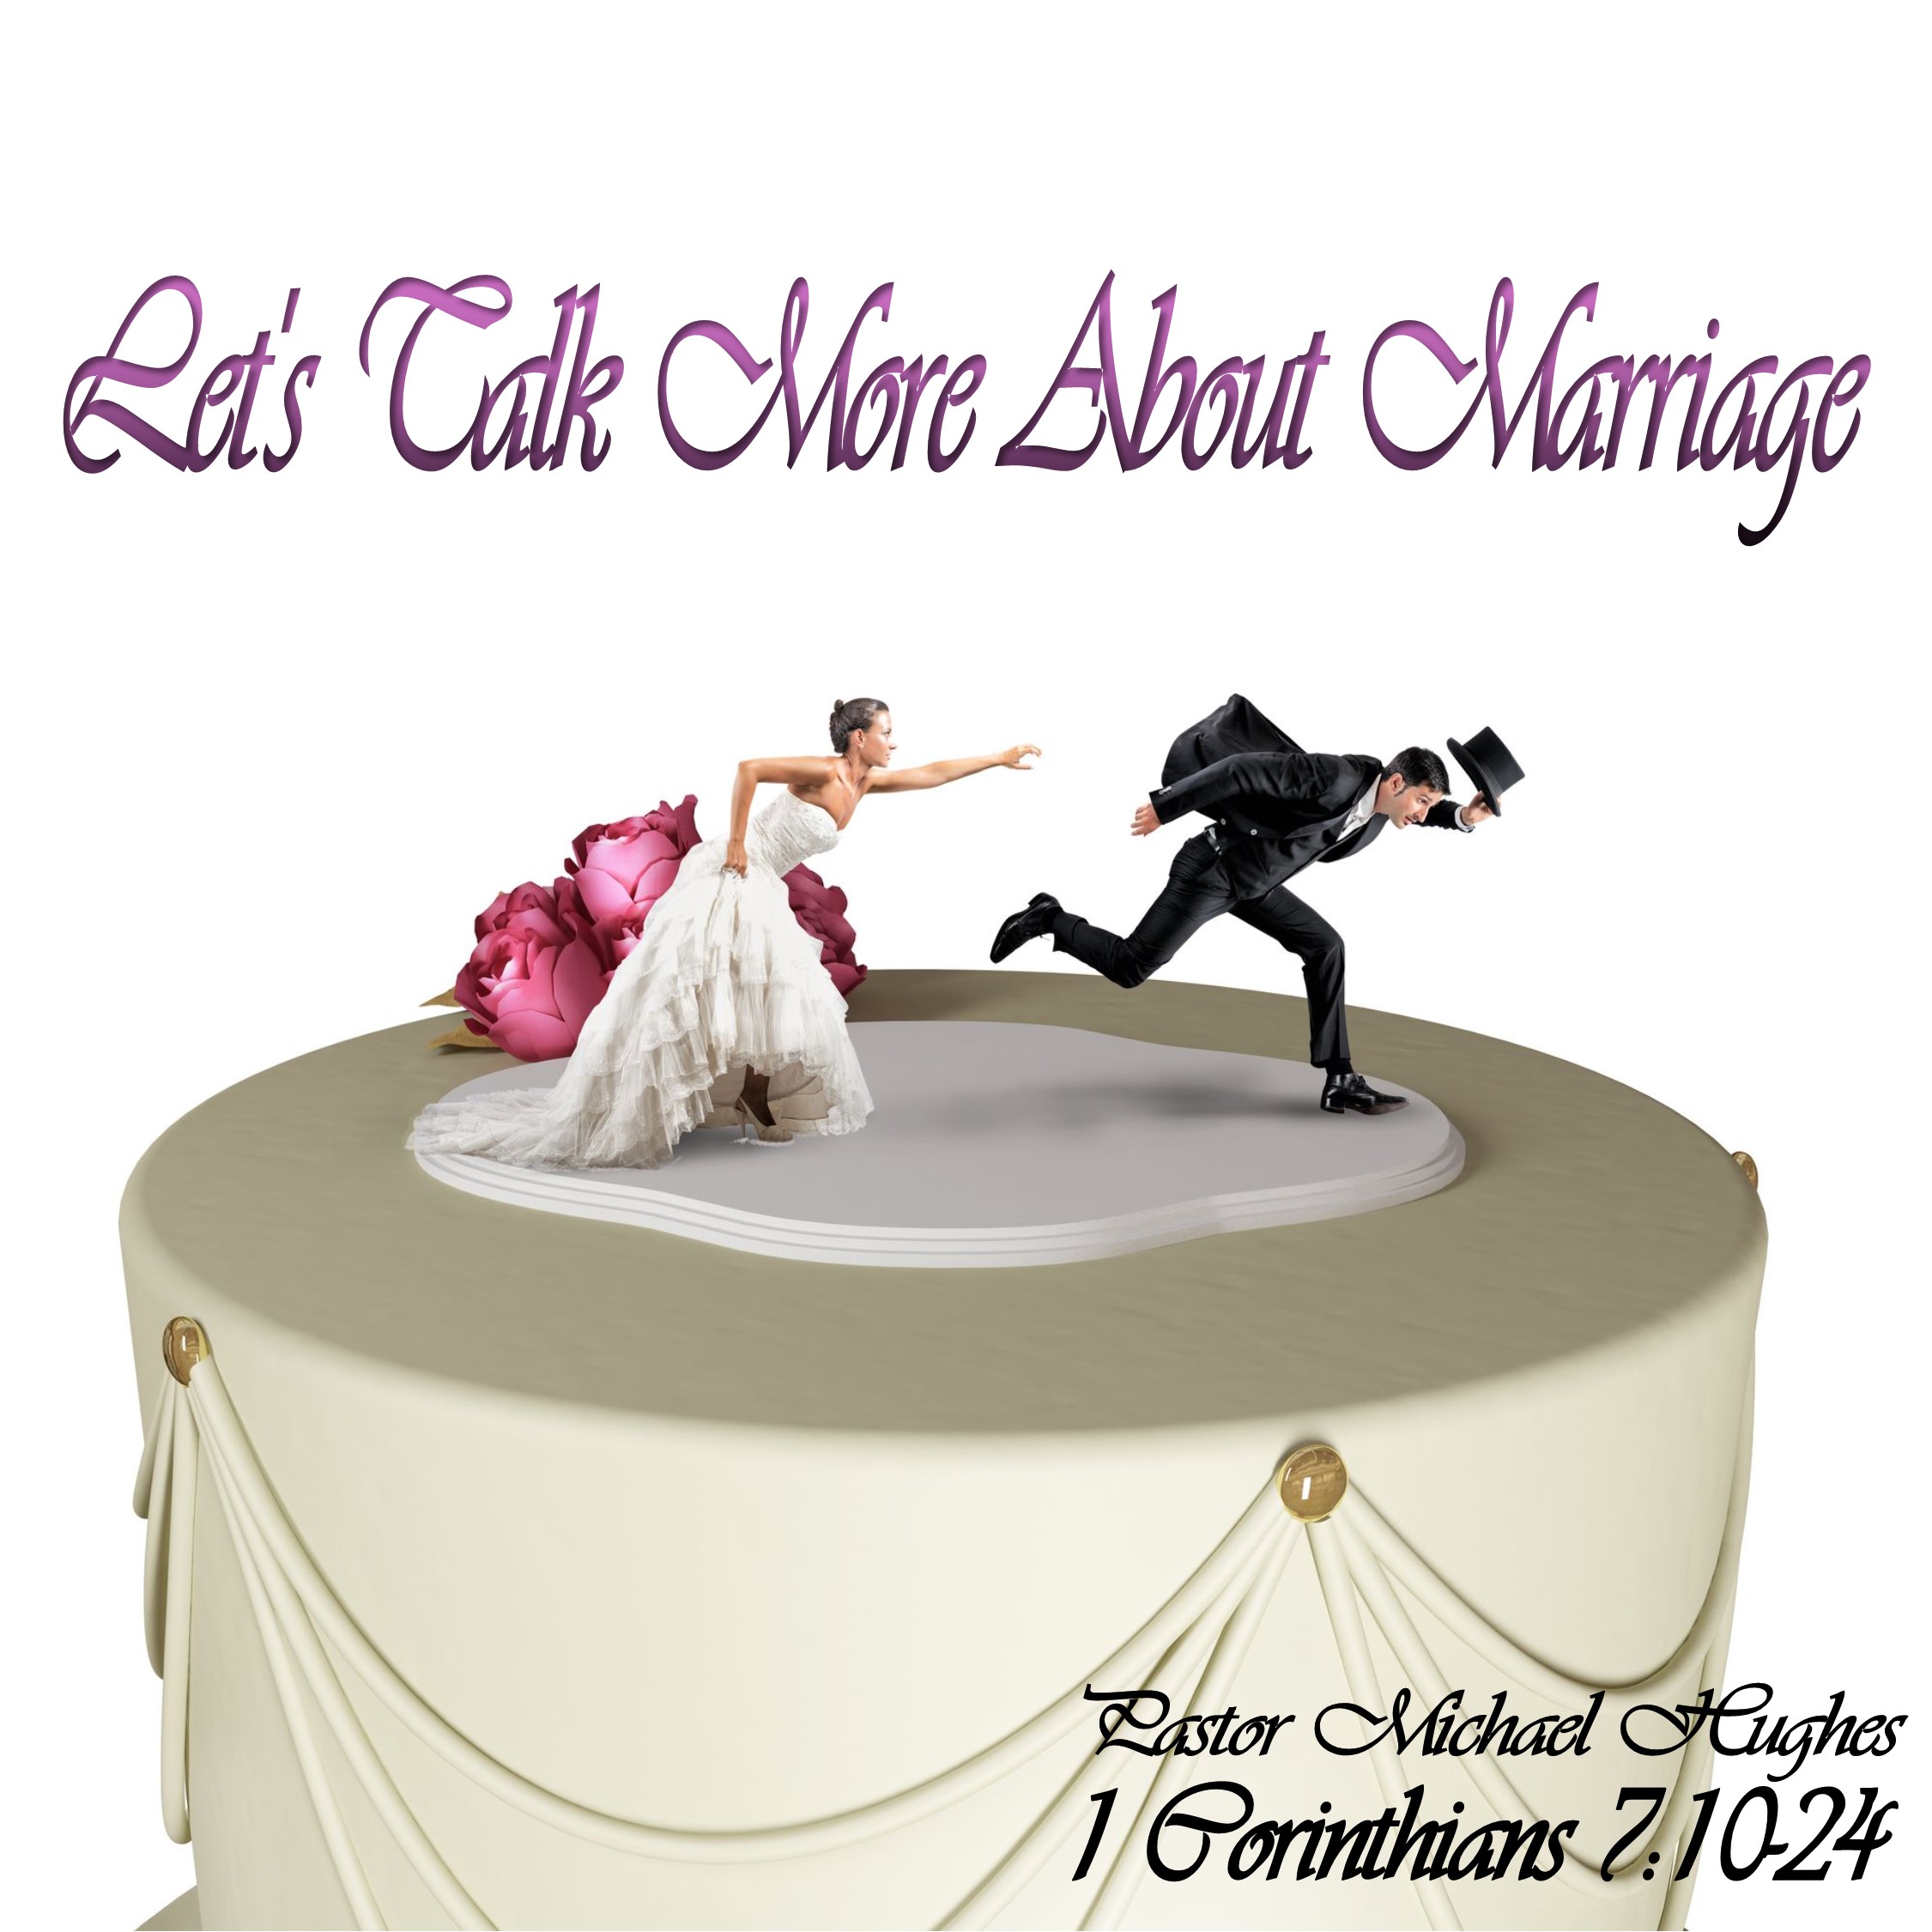 1 Corinthians 7:10-24 ”Let’s Talk More About Marriage” w/ Pastor Michael Hughes